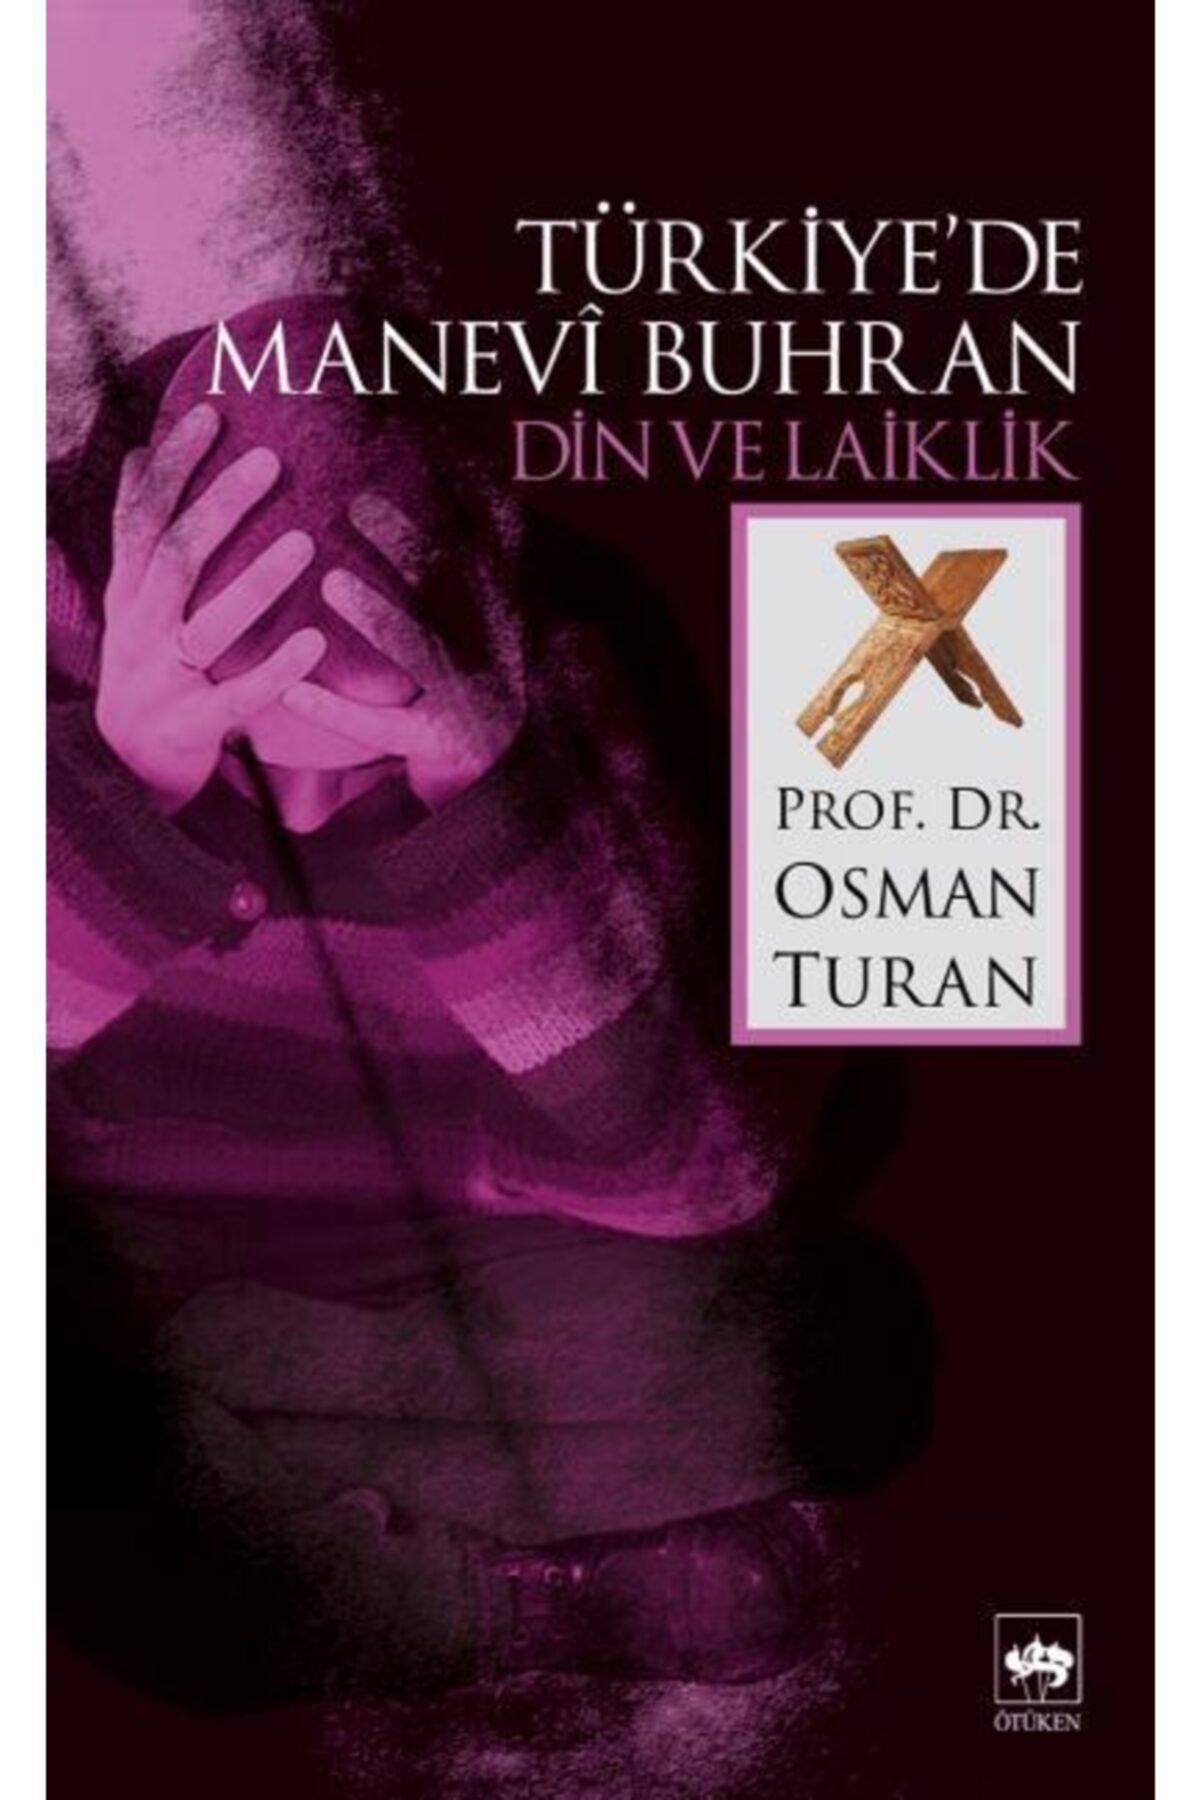 Ötüken Neşriyat Türkiye’de Manevi Buhran Din Ve Laiklik - - Osman Turan Kitabı